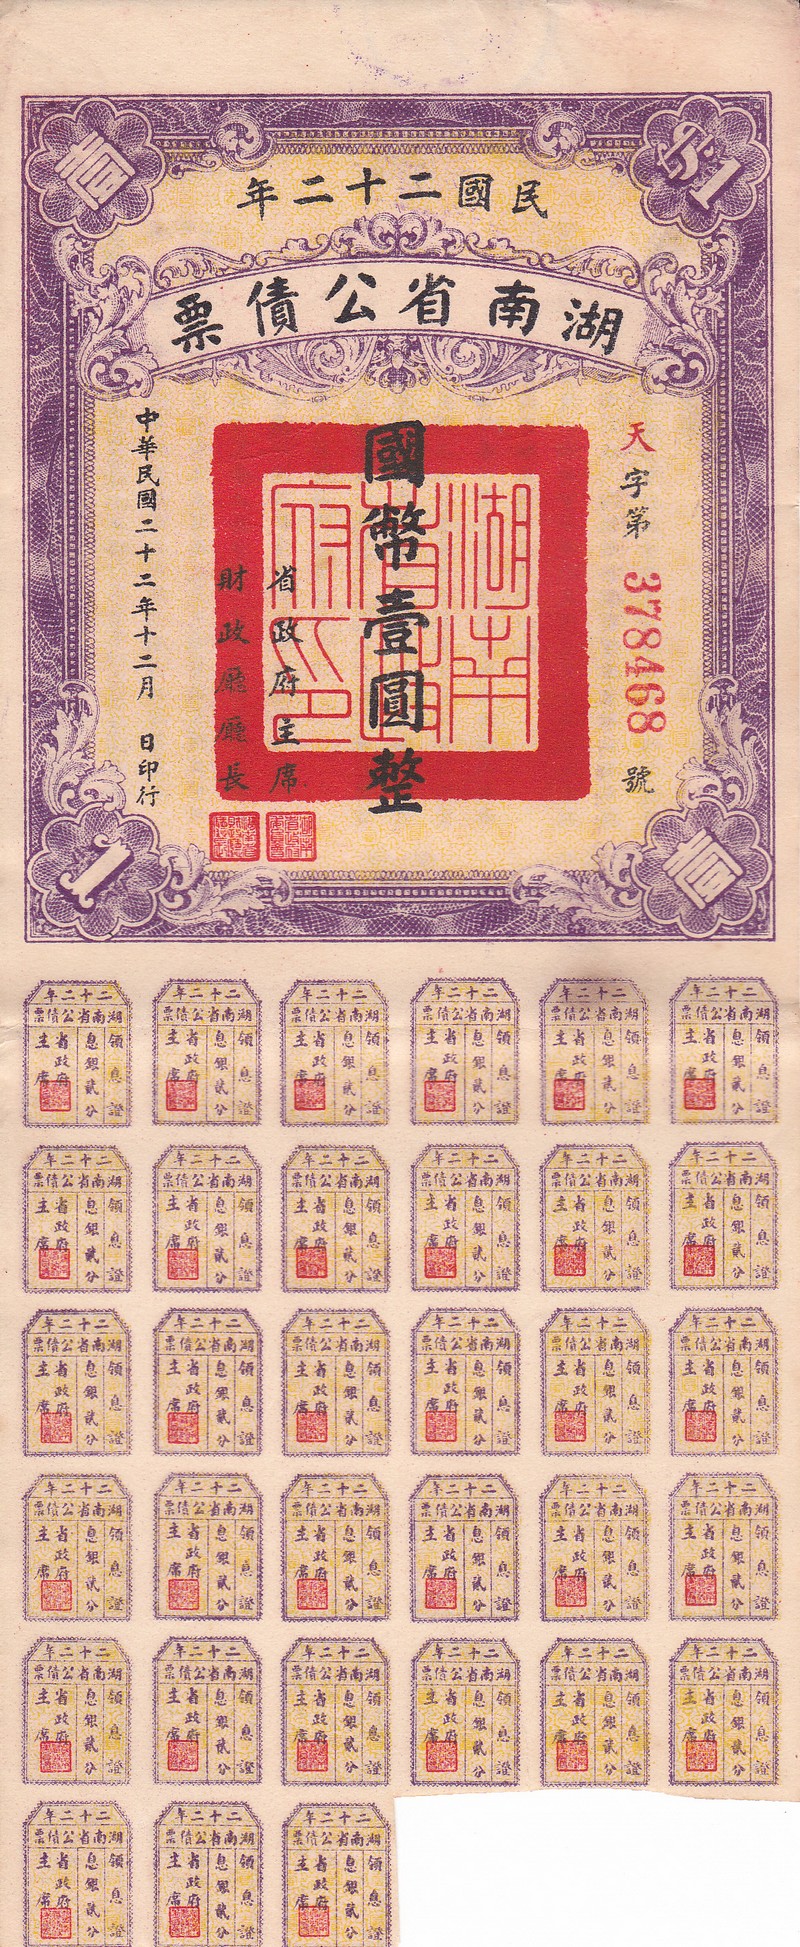 B2906, Hunan Province 4% Loan, 1 Dollar Bond, China 1933